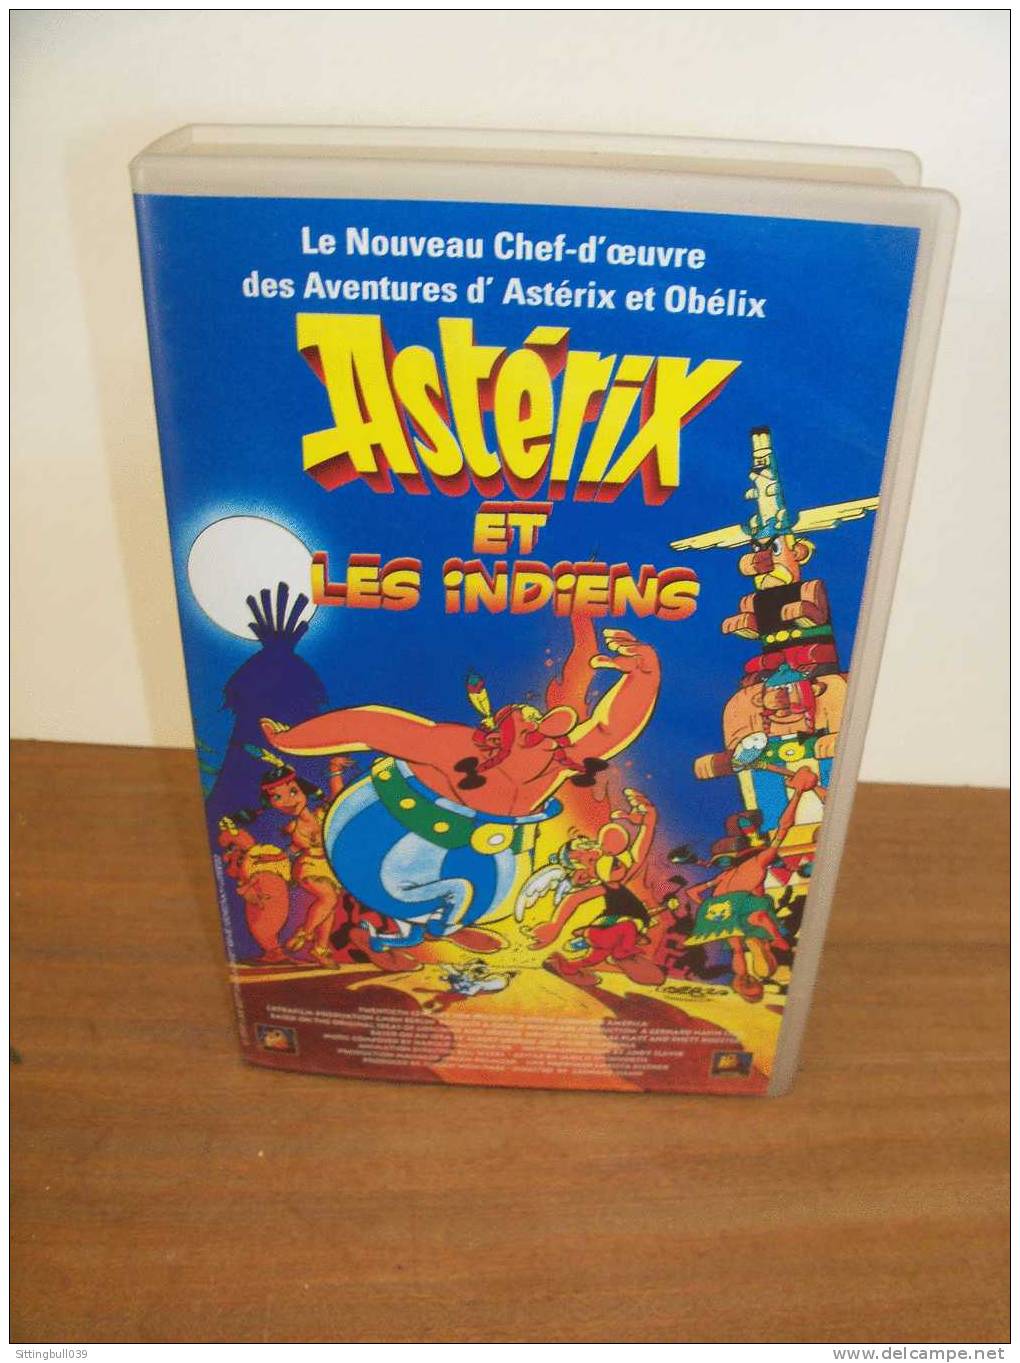 ASTERIX Et LES INDIENS. Le Film En K7 Hi-Fi Stereo + Une Entrée Gratuite Au PARC ASTERIX. 1995 Ed. A. R/GOSCINNY-UDERZO - Video En DVD